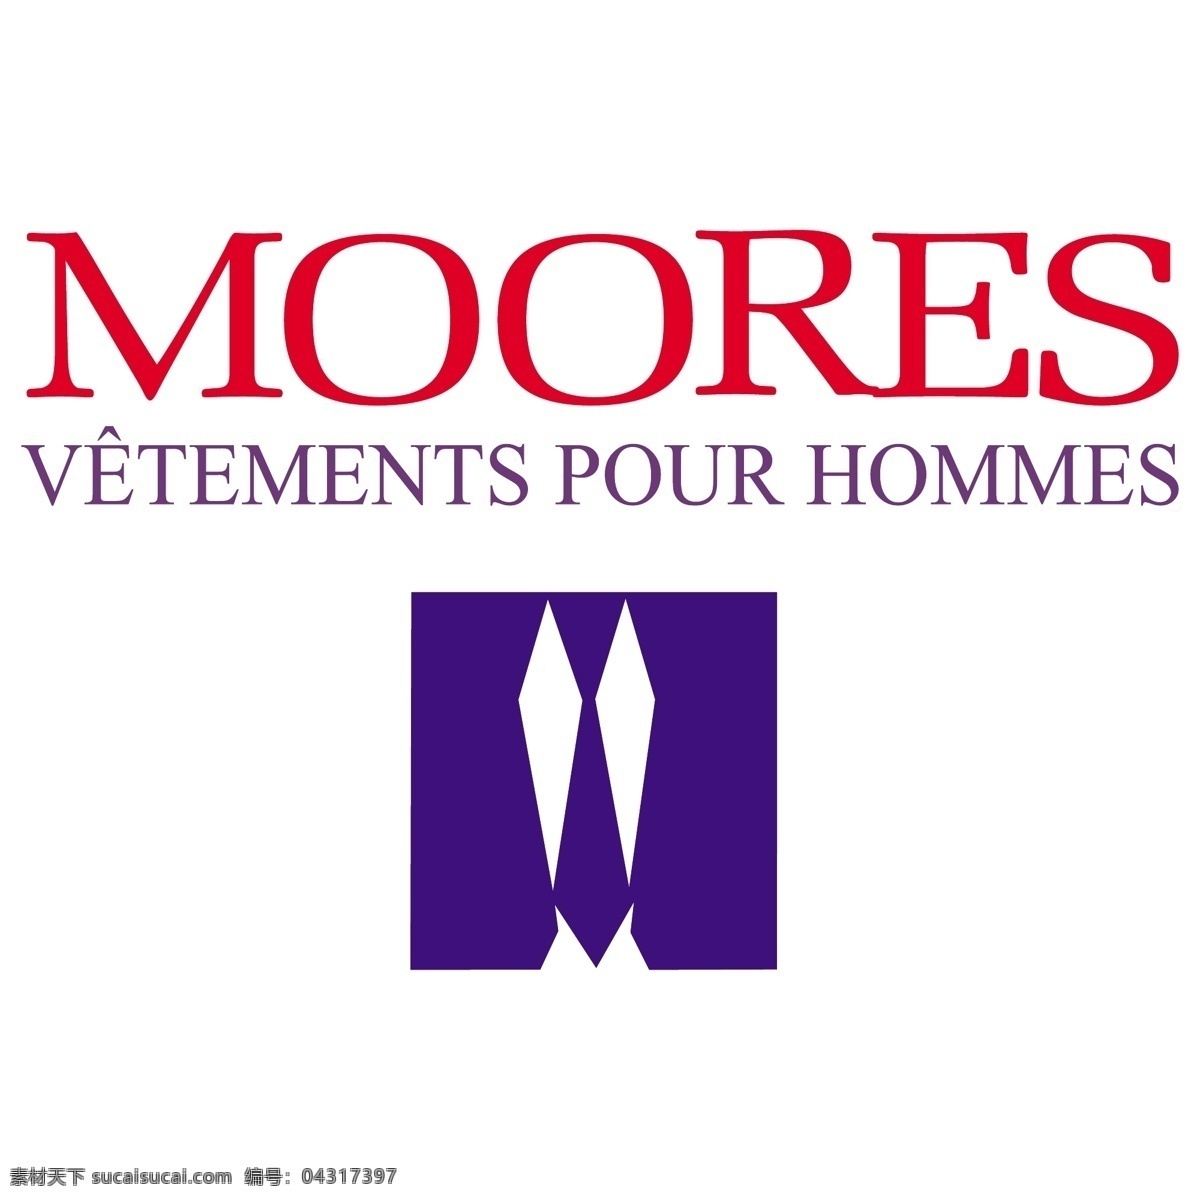 摩 尔斯 vetements 倒 系列 免费 莫尔斯 标志 psd源文件 logo设计